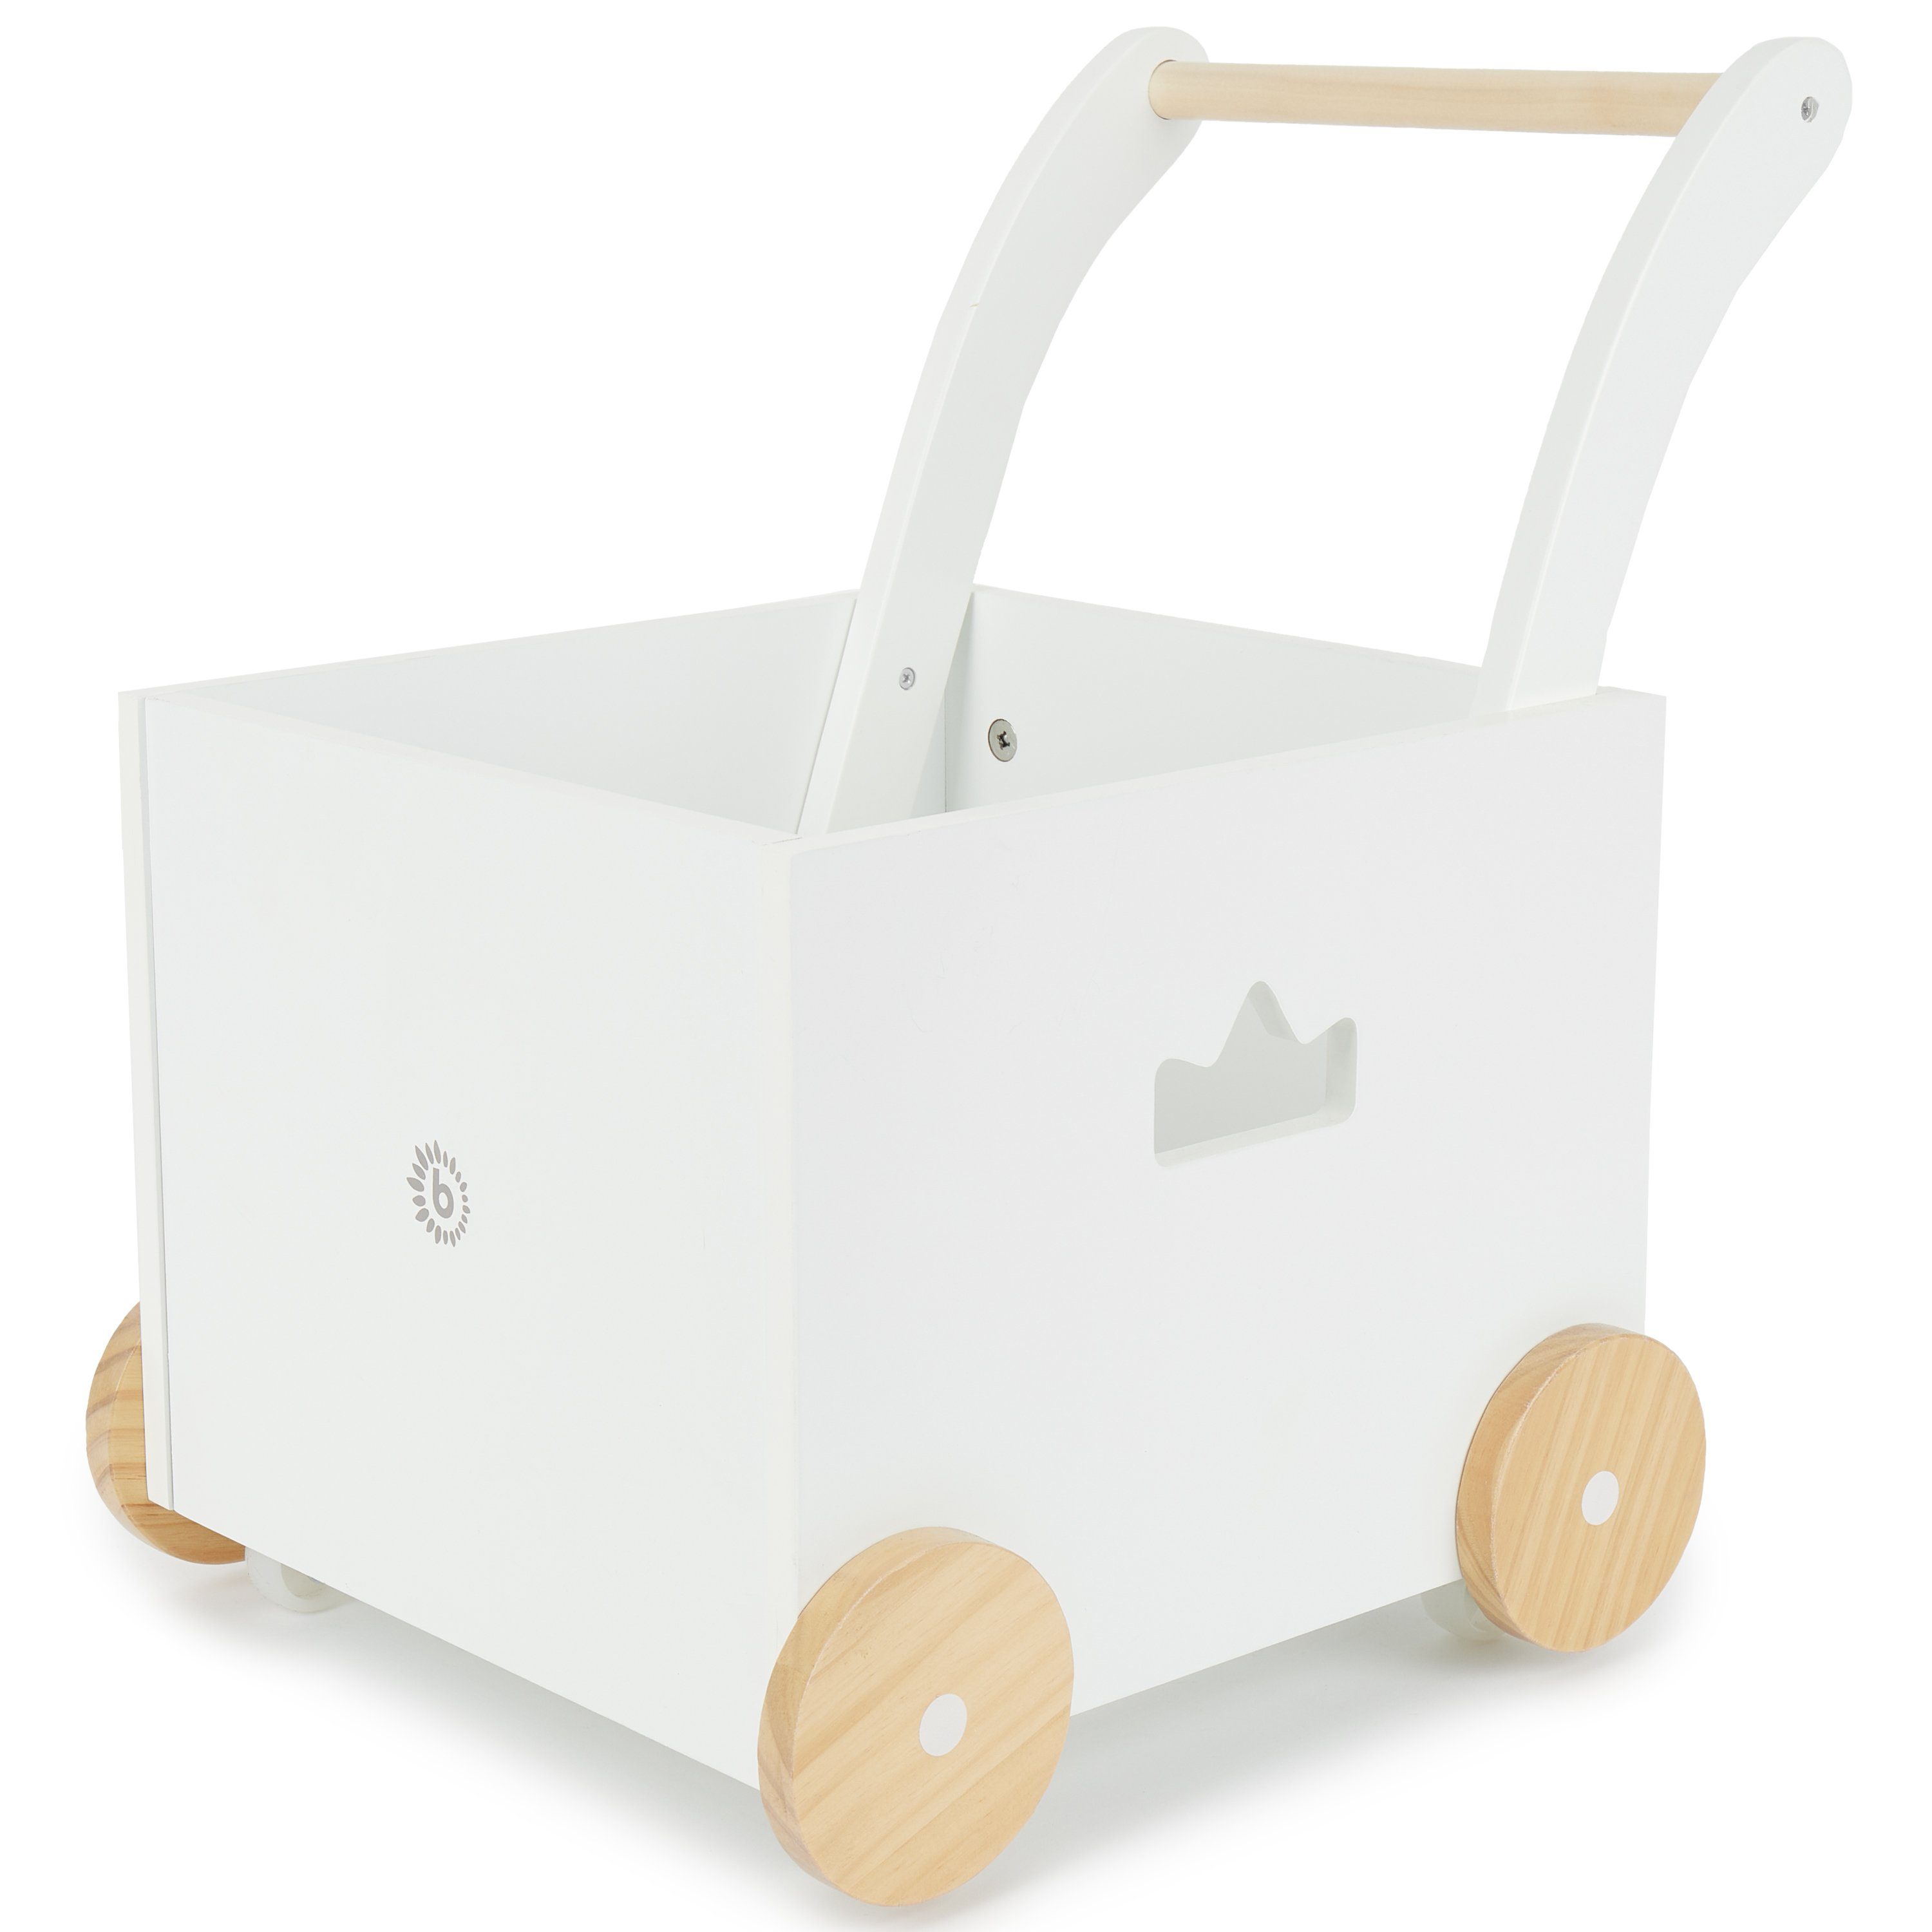 BIECO Lauflernhilfe Bieco Ходунки Holz ab 1 Jahr Multifunktionale Baby Lauflernhilfe Laufwagen für Babys in schlichtem Design Baby Gehhilfe Lauflernhilfe für Babys Baby Laufwagen mit Stauraum